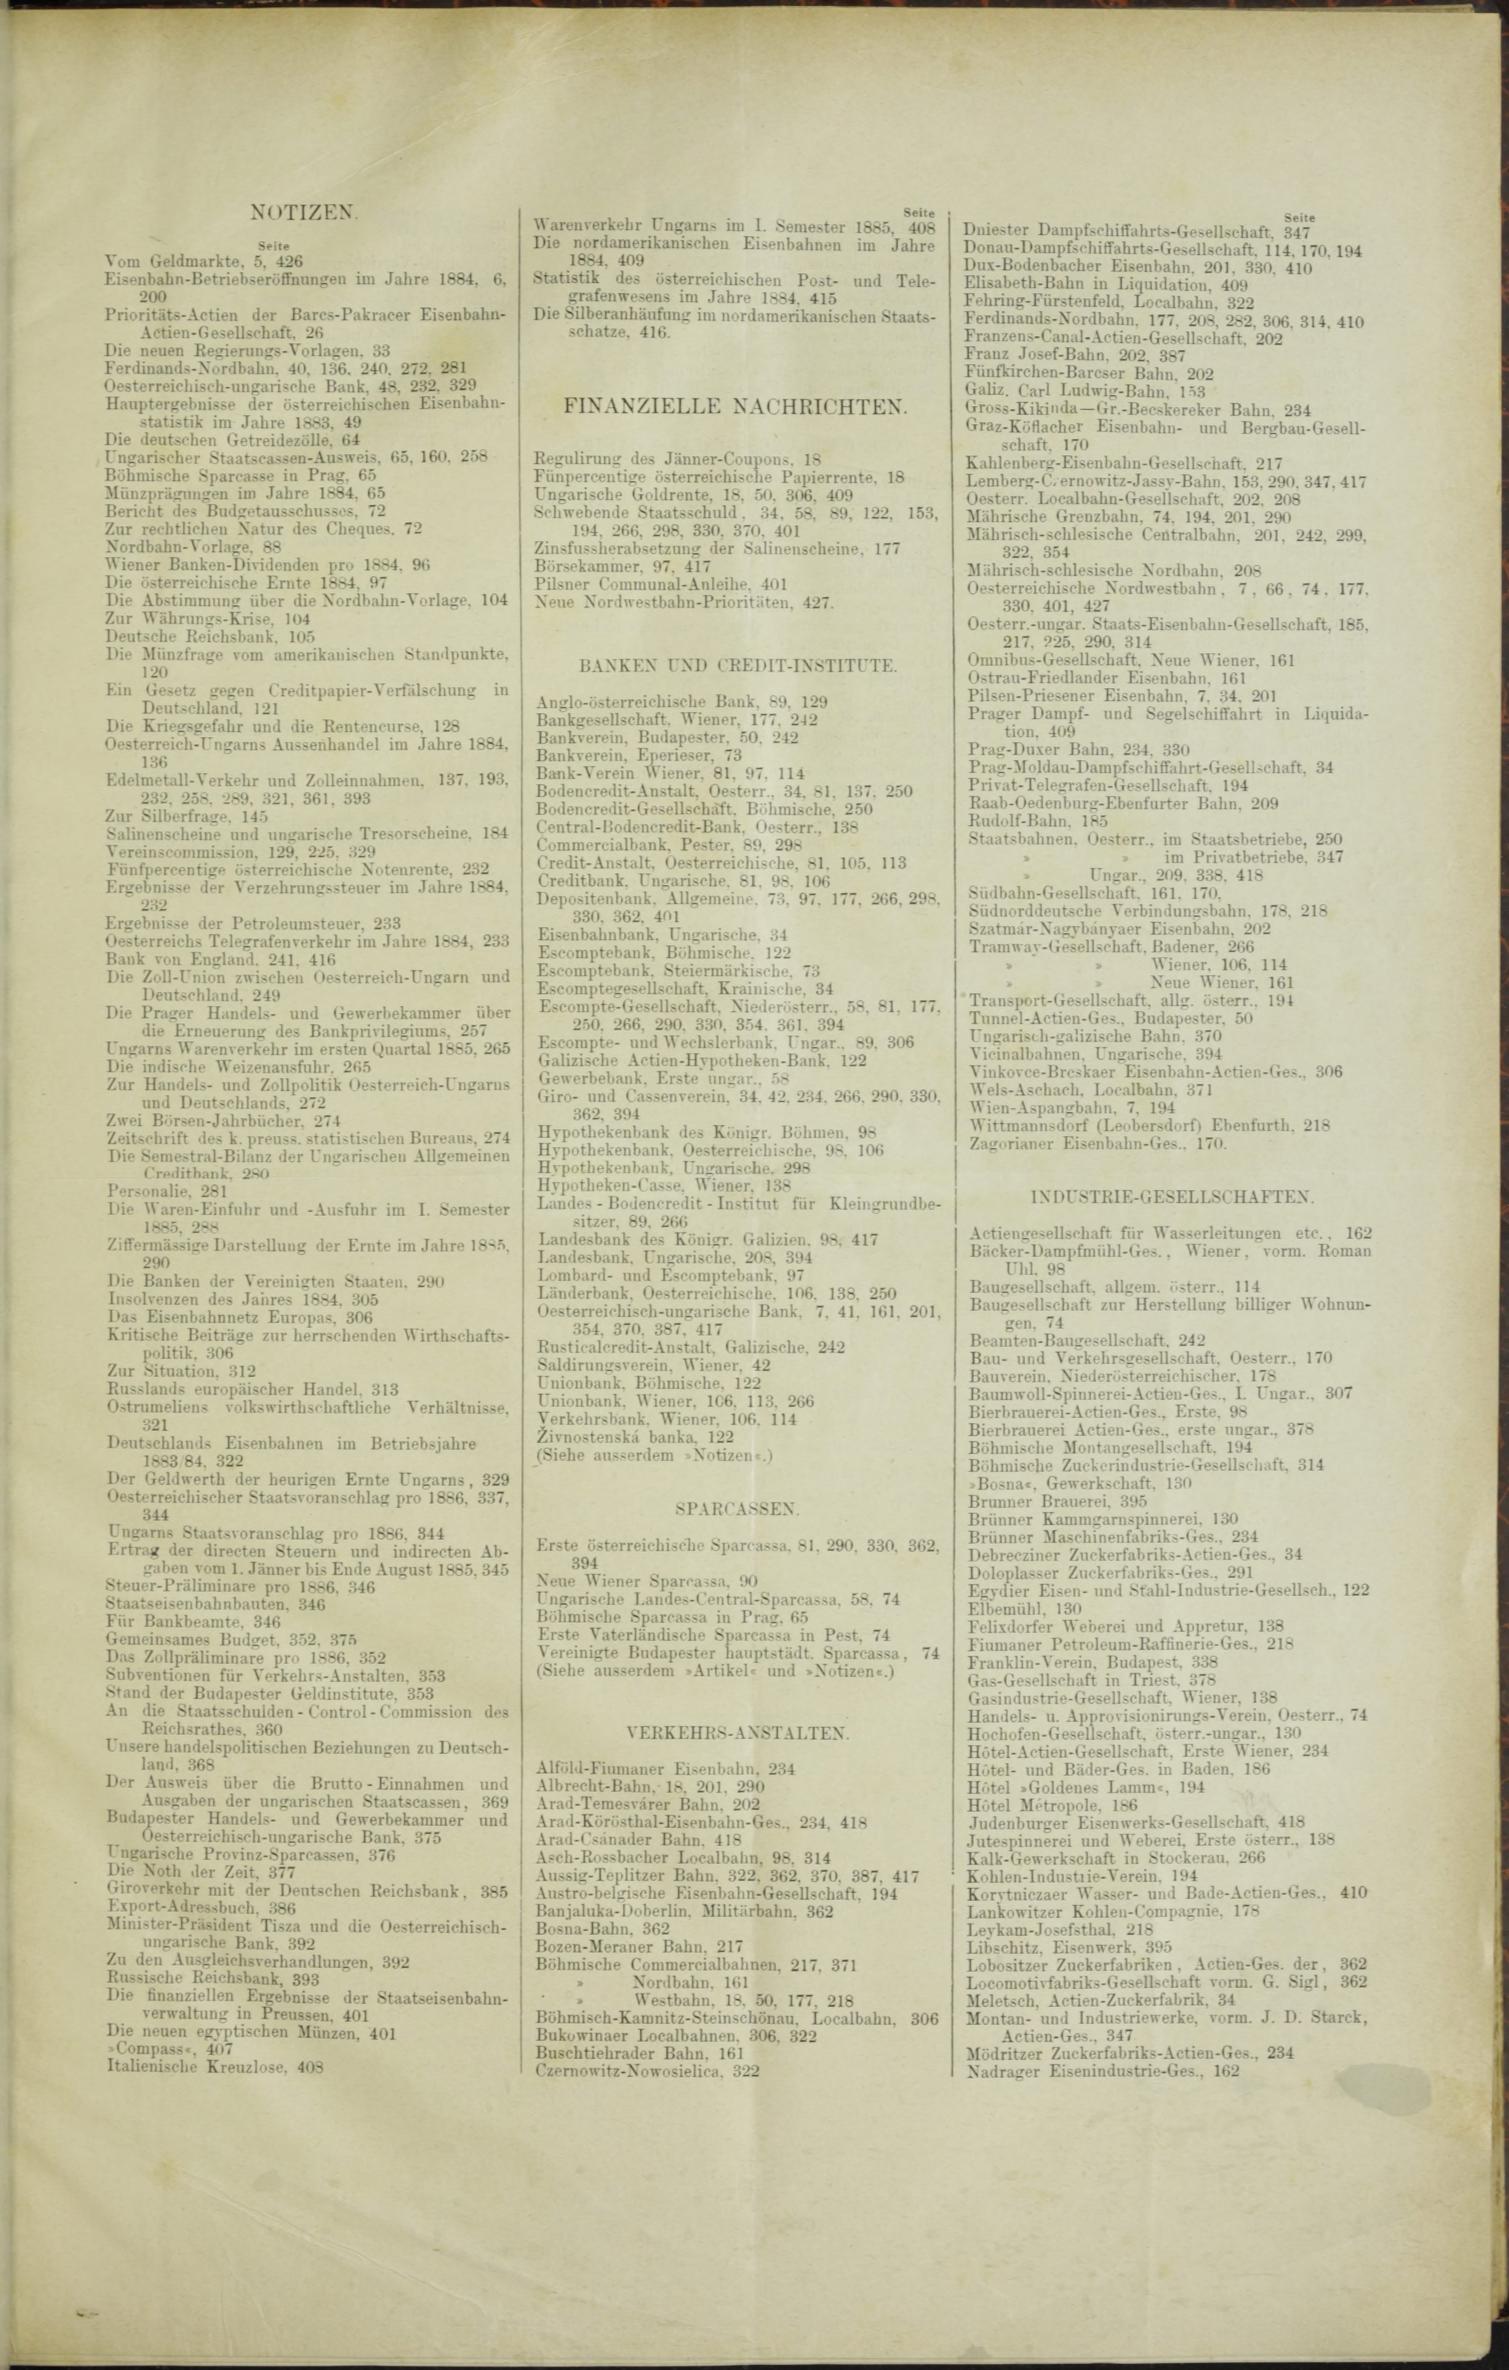 Der Tresor 13.08.1885 - Seite 11